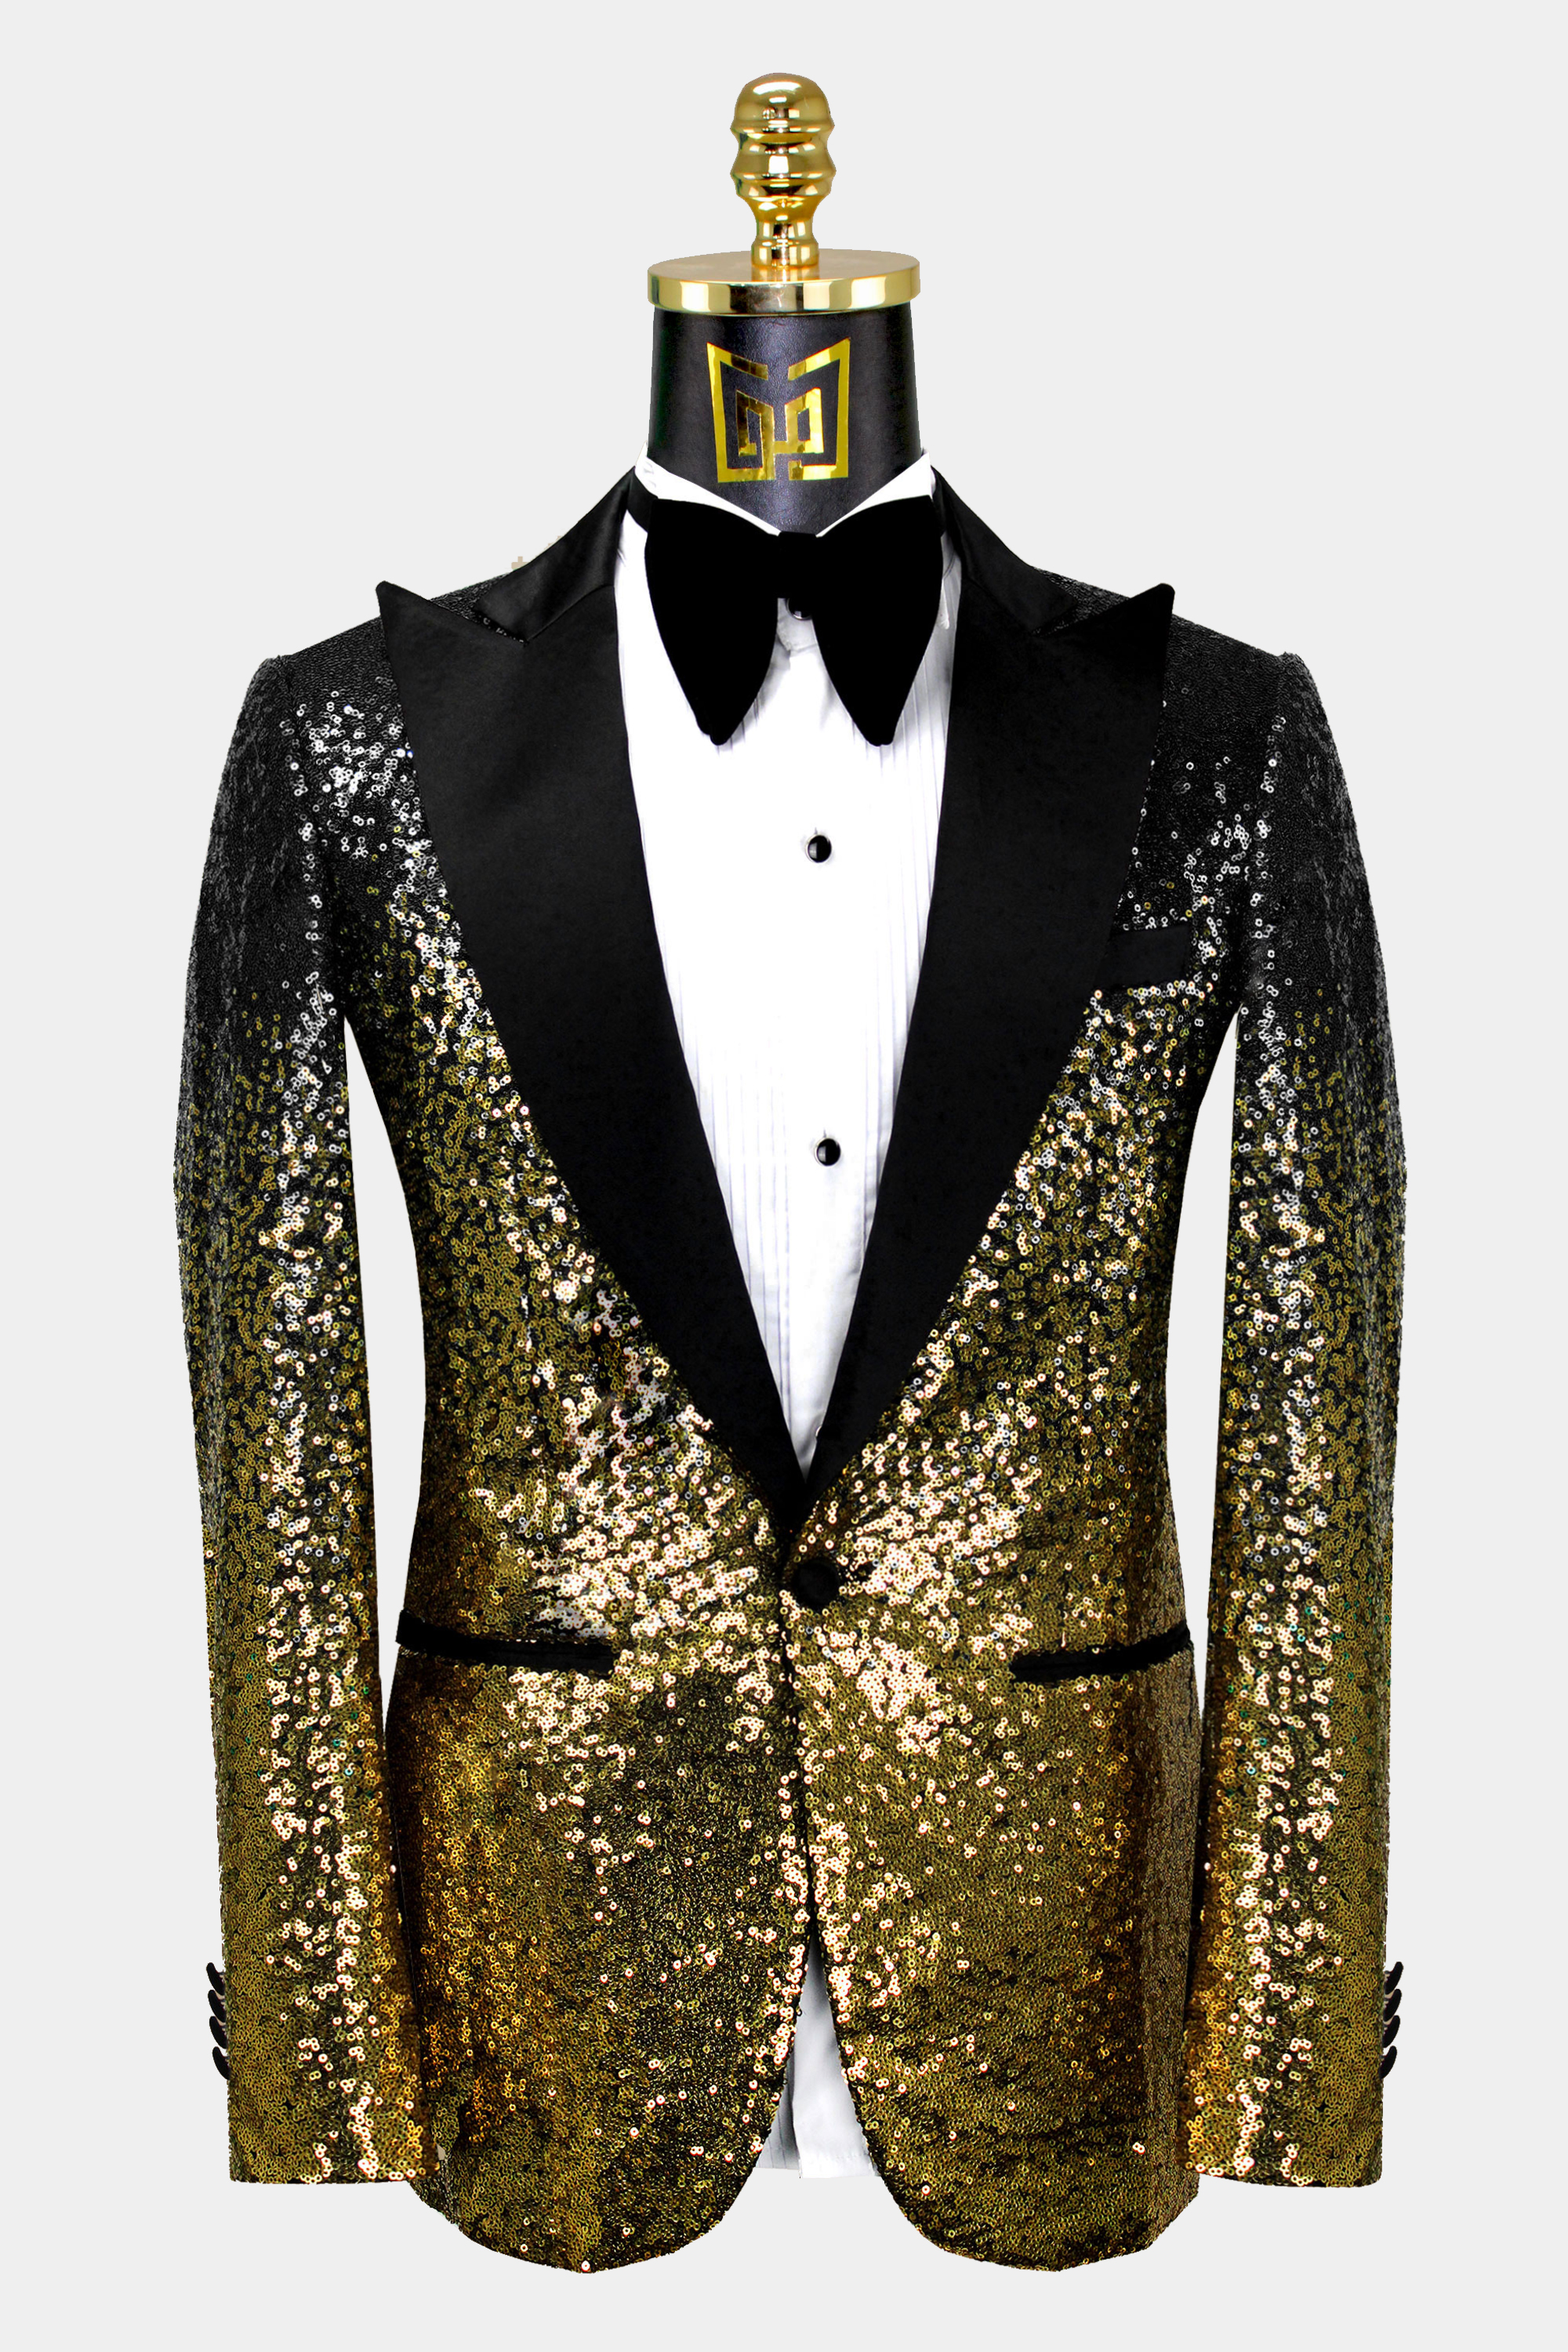 Mens-Black-and-Gold-Sequin-Tuxedo-Jacket-Wedding-Prom-Blazer-Suit-from-Gentlemansguru.com